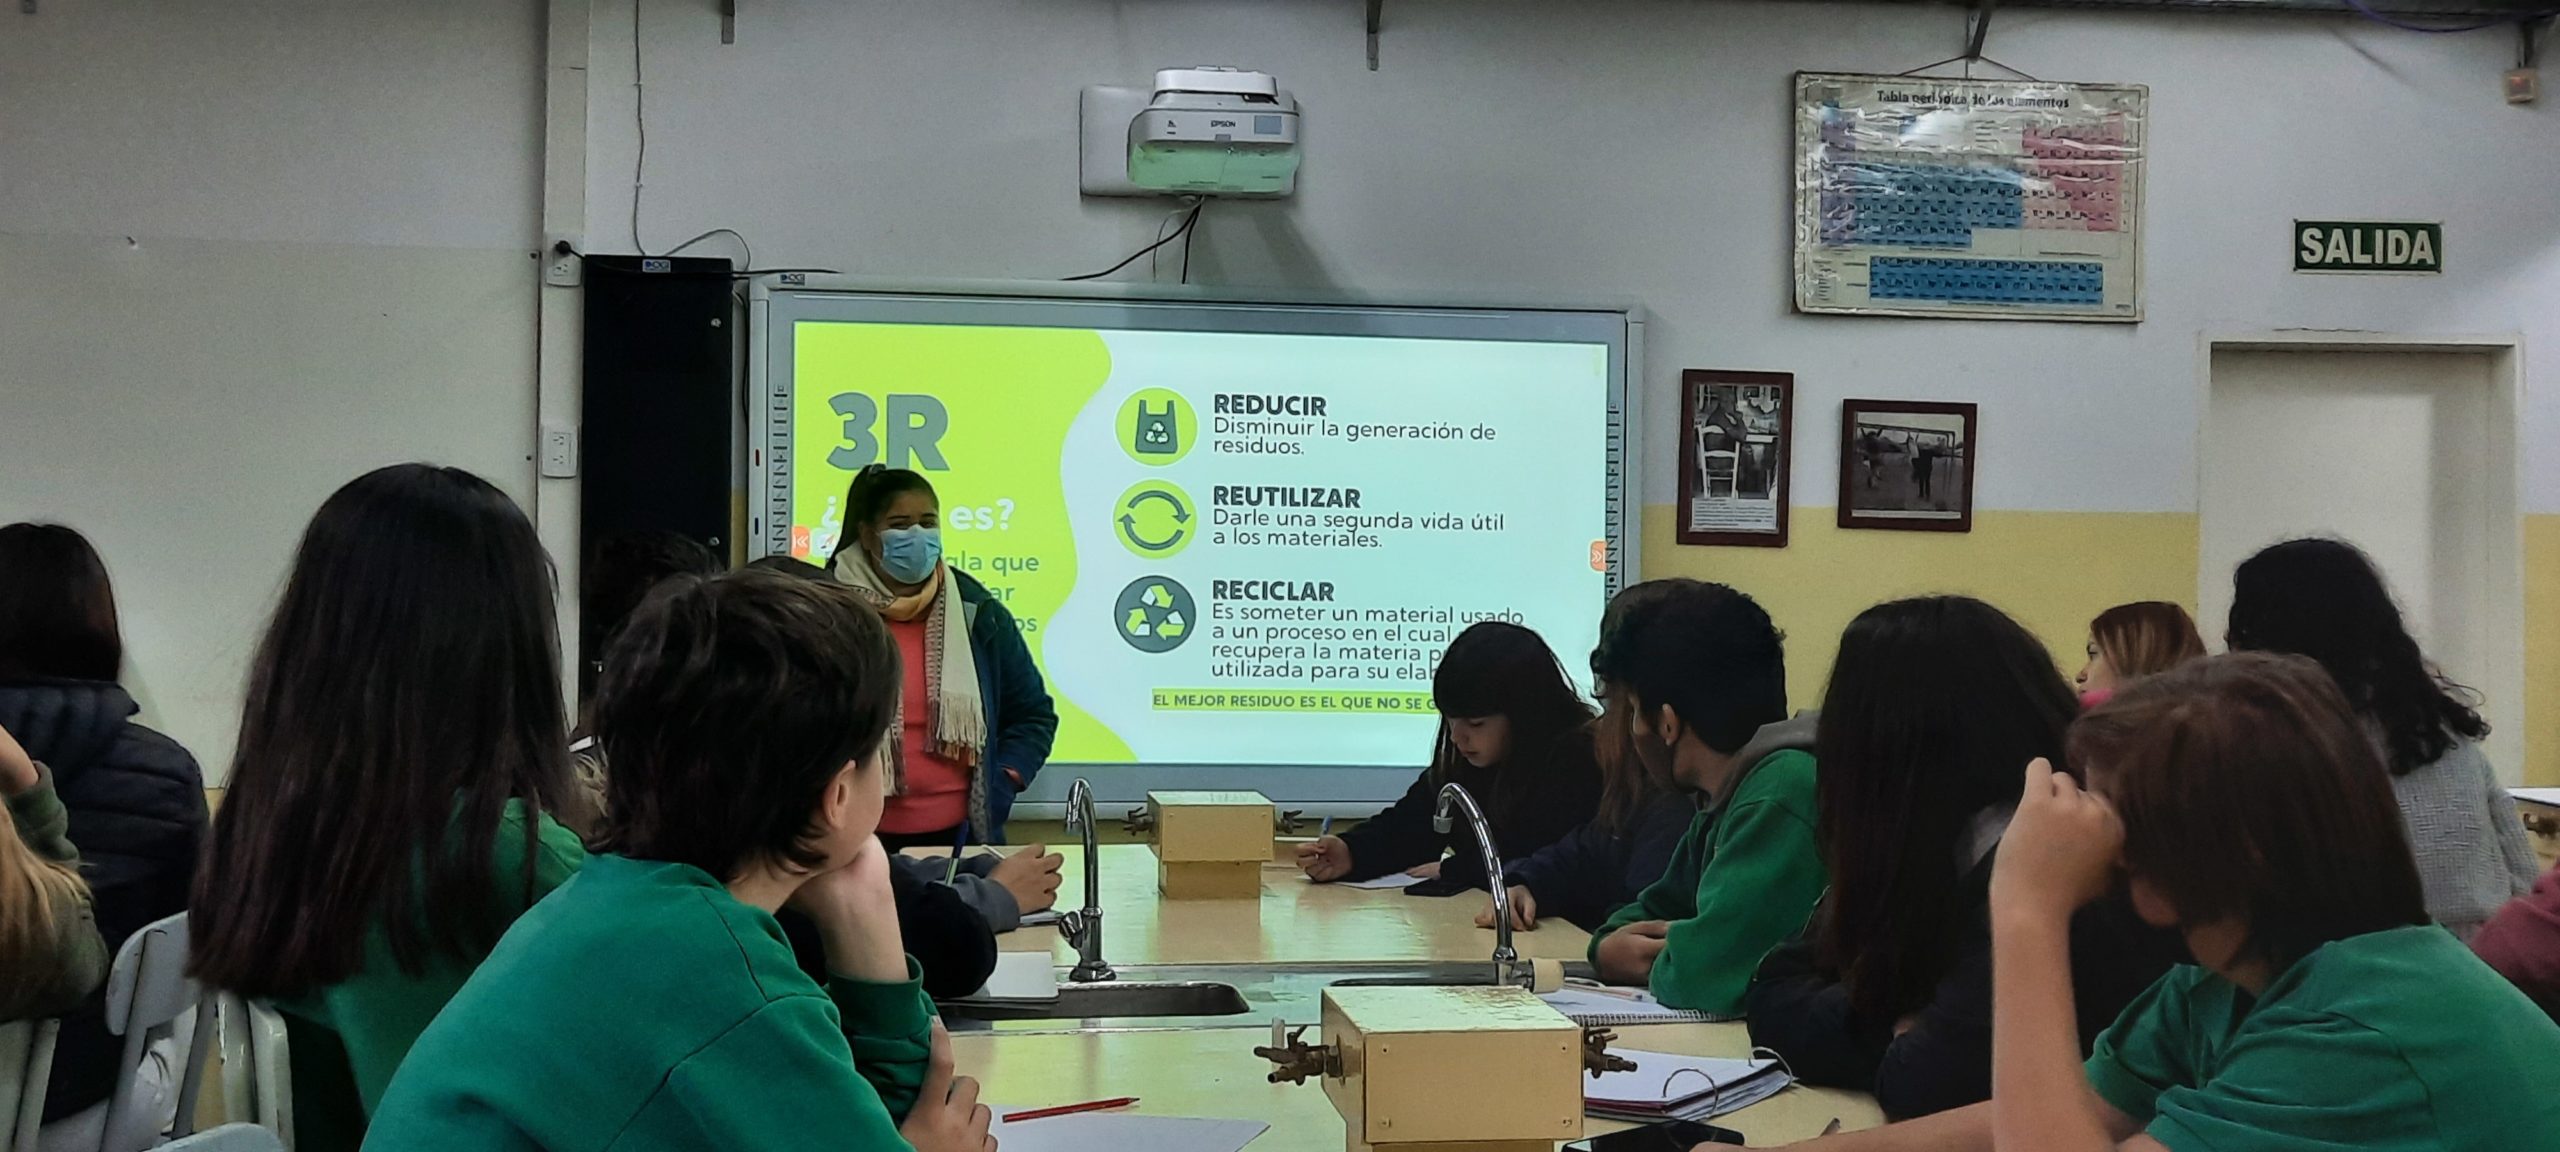  Comenzaron los talleres del programa “Mi escuela recicla”